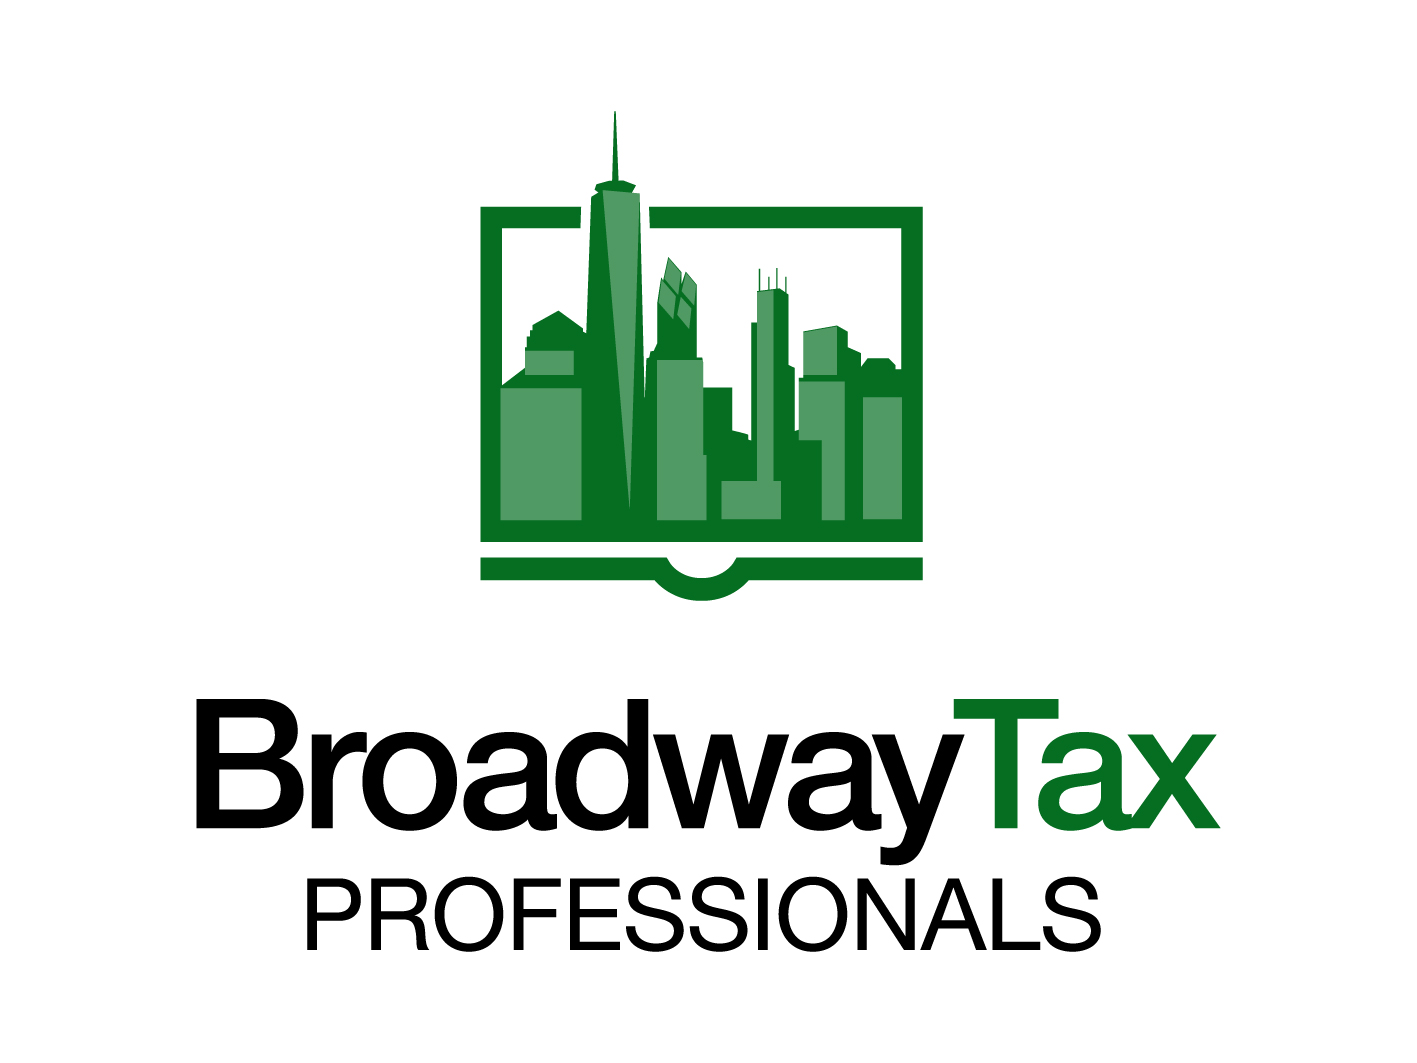 Broadway Tax Professionals